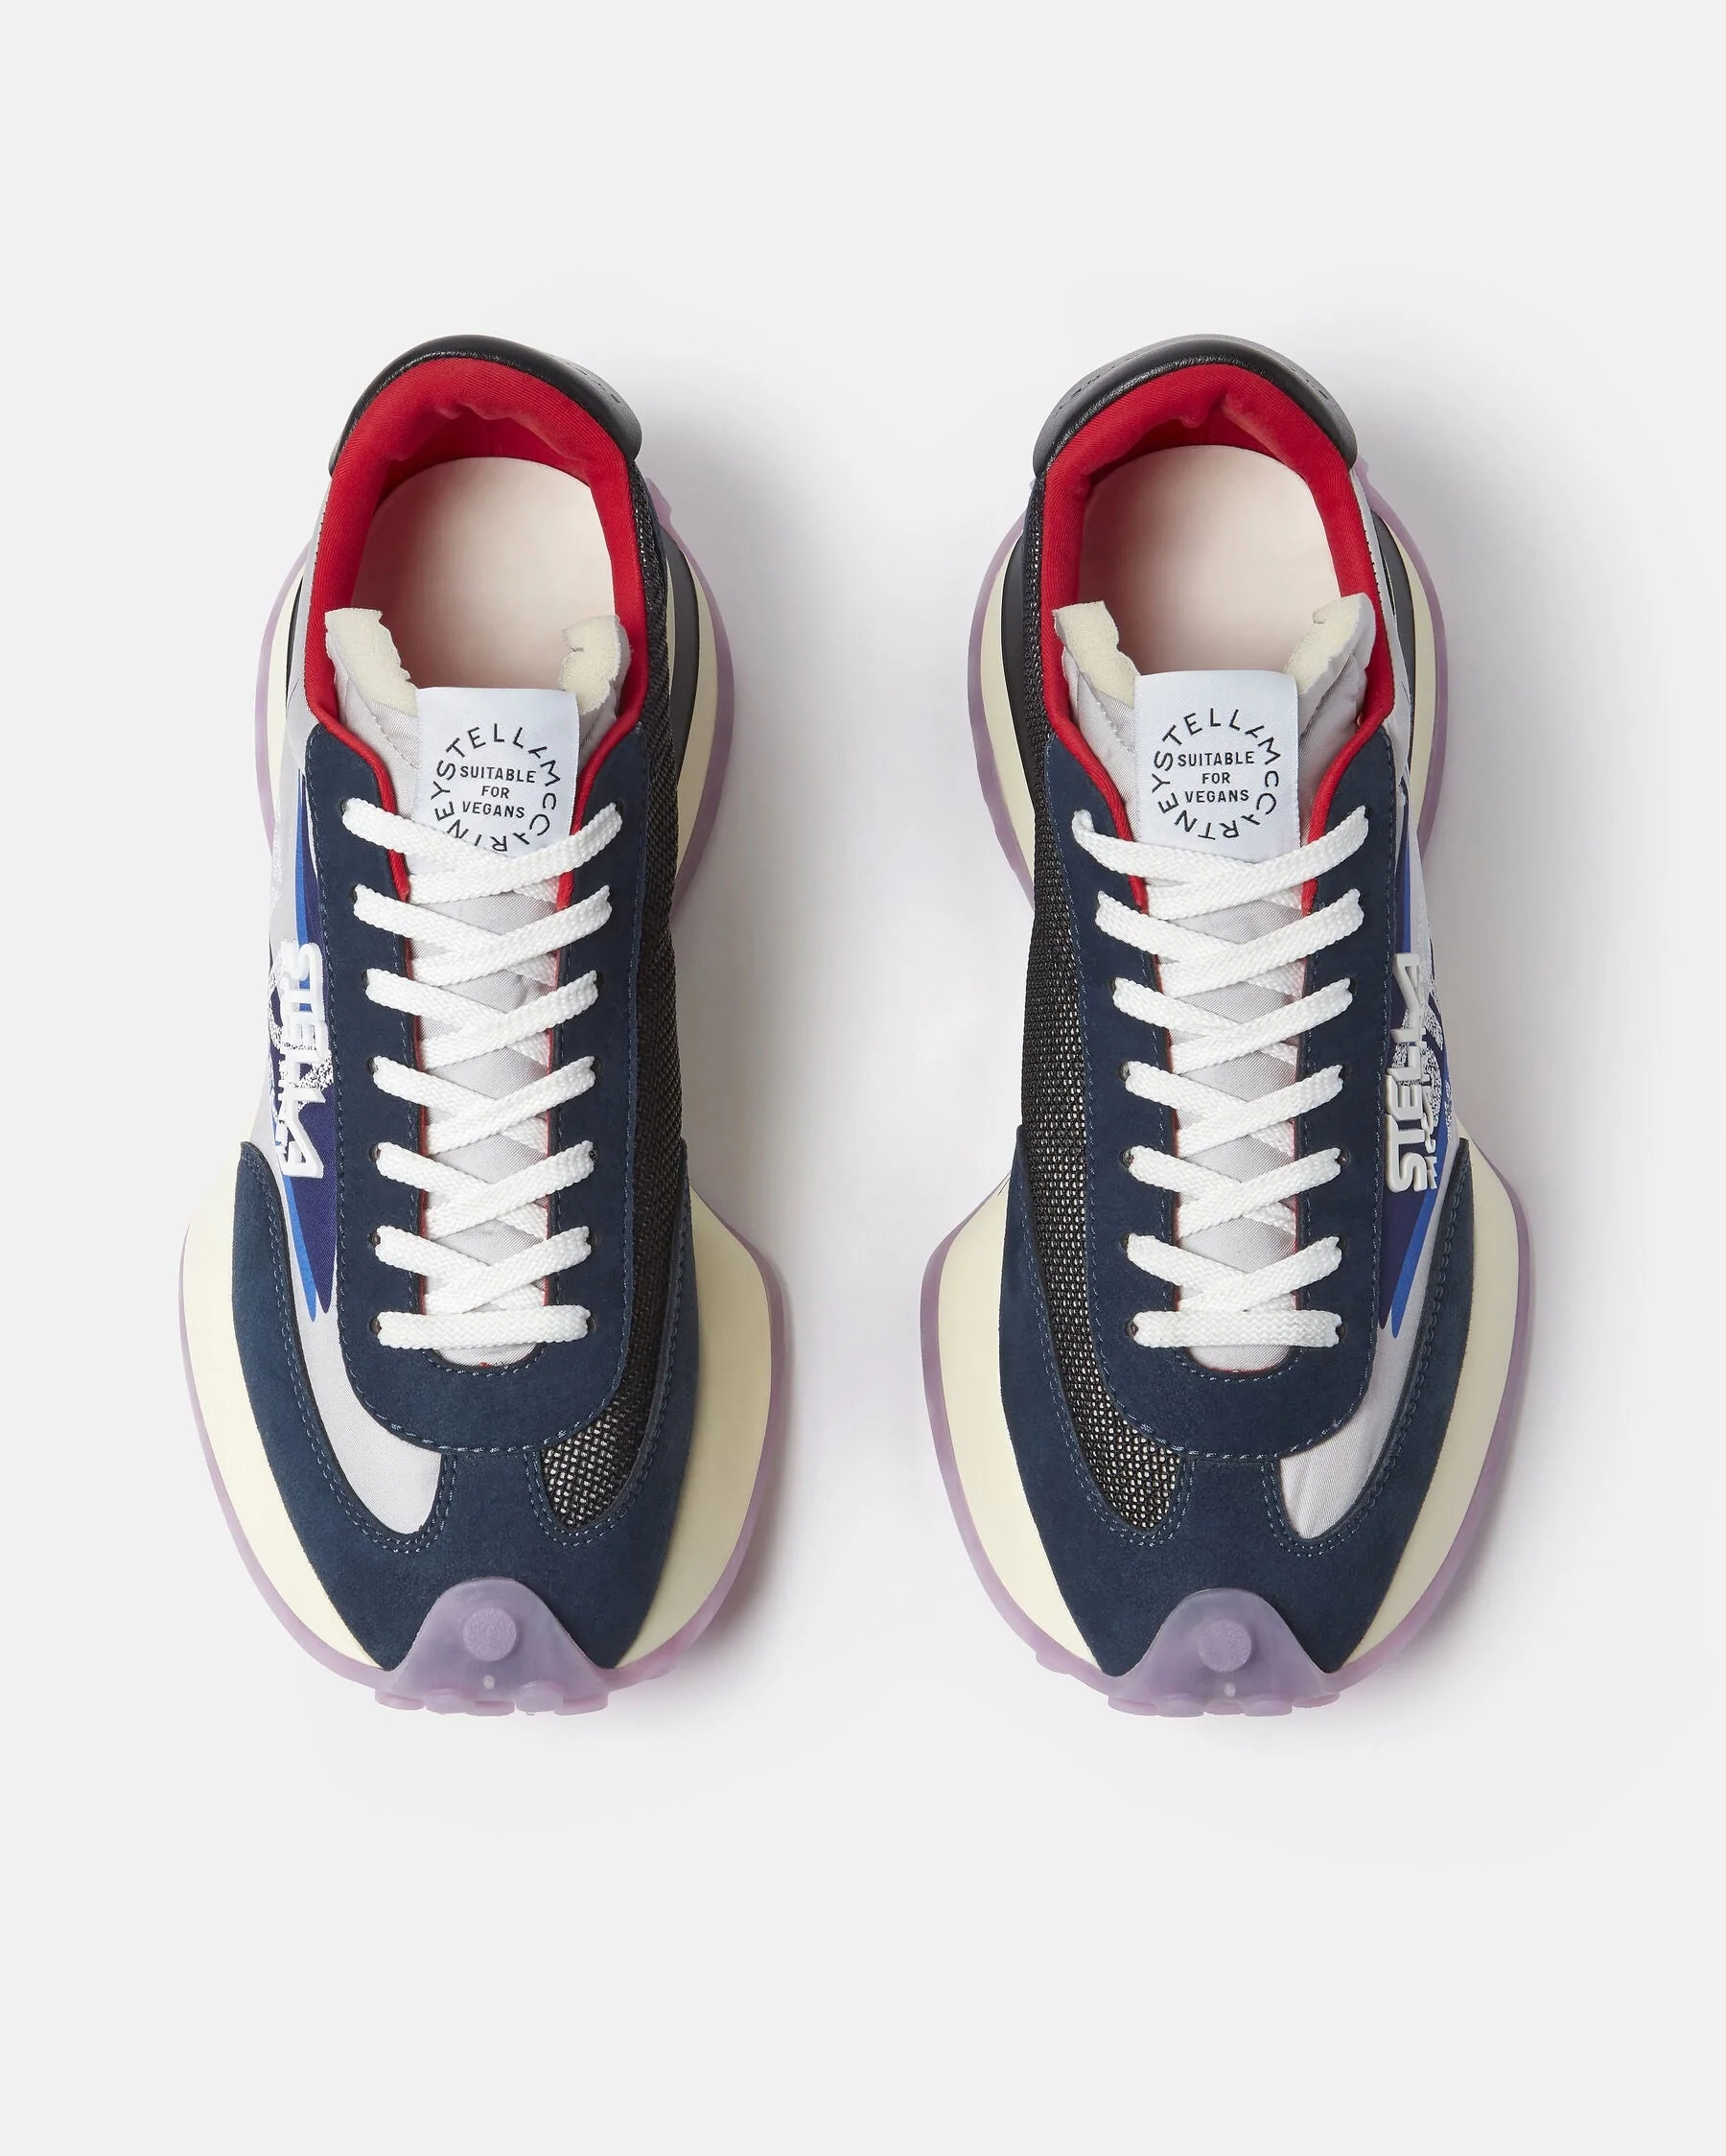 Stella McCartney Reclypse Sneakers In Navy/Lilac